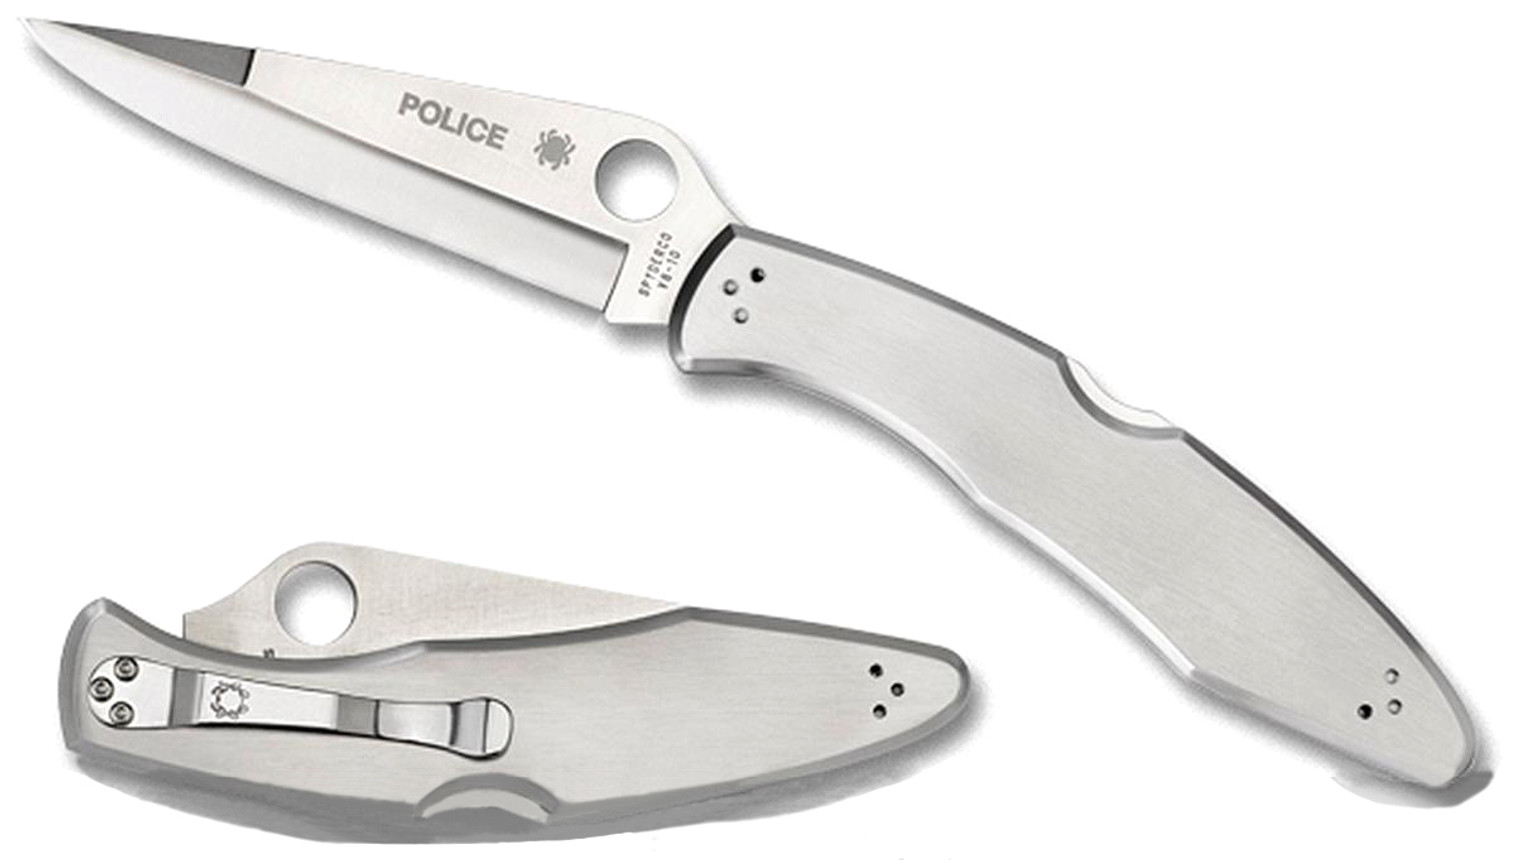 Spyderco Police Stainless Steel 4.35" Folding Knife - Plain Edge